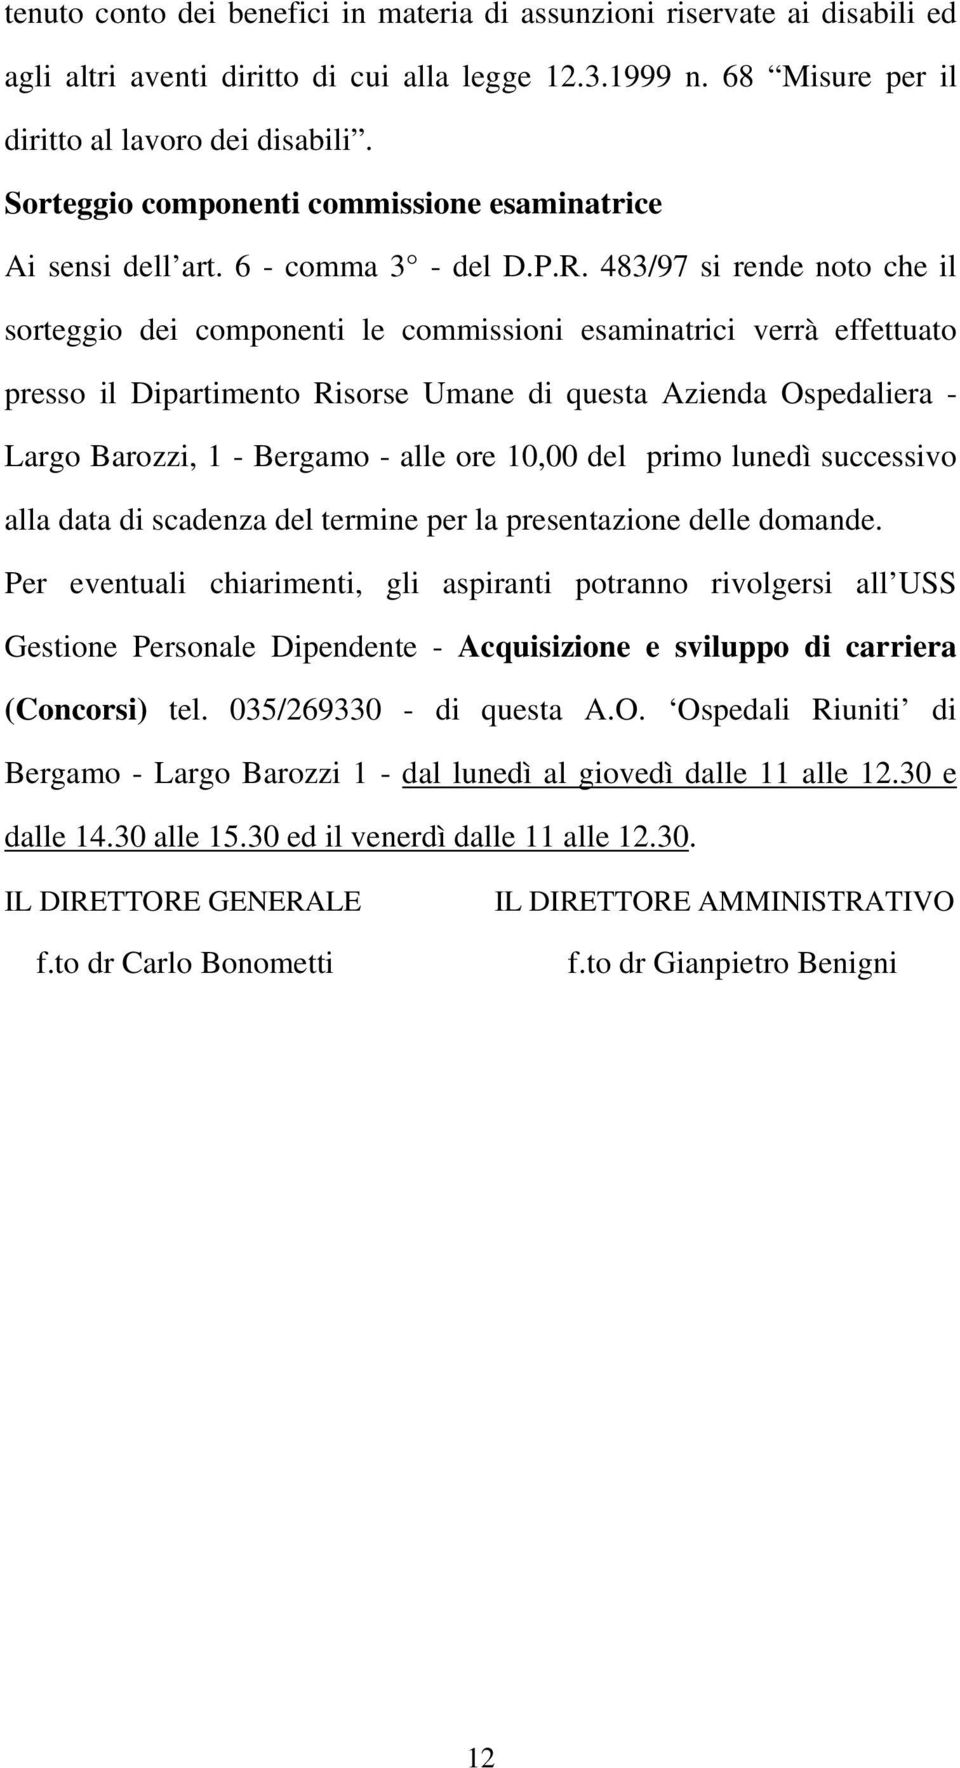 483/97 si rende noto che il sorteggio dei componenti le commissioni esaminatrici verrà effettuato presso il Dipartimento Risorse Umane di questa Azienda Ospedaliera - Largo Barozzi, 1 - Bergamo -